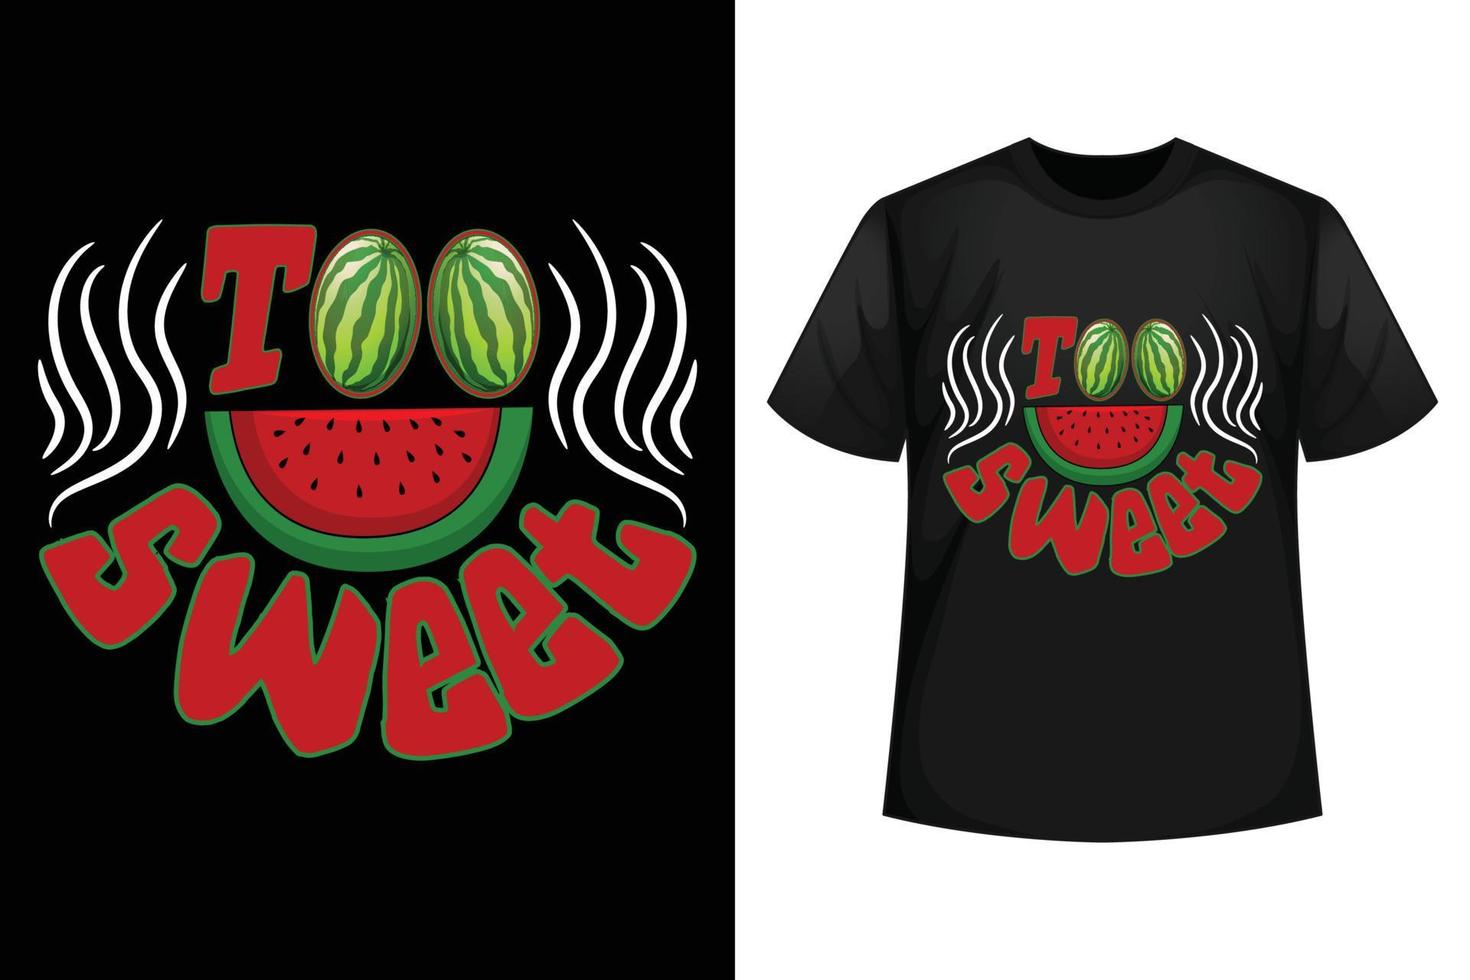 zu süß - Designvorlage für Wassermelonen-T-Shirts. vektor